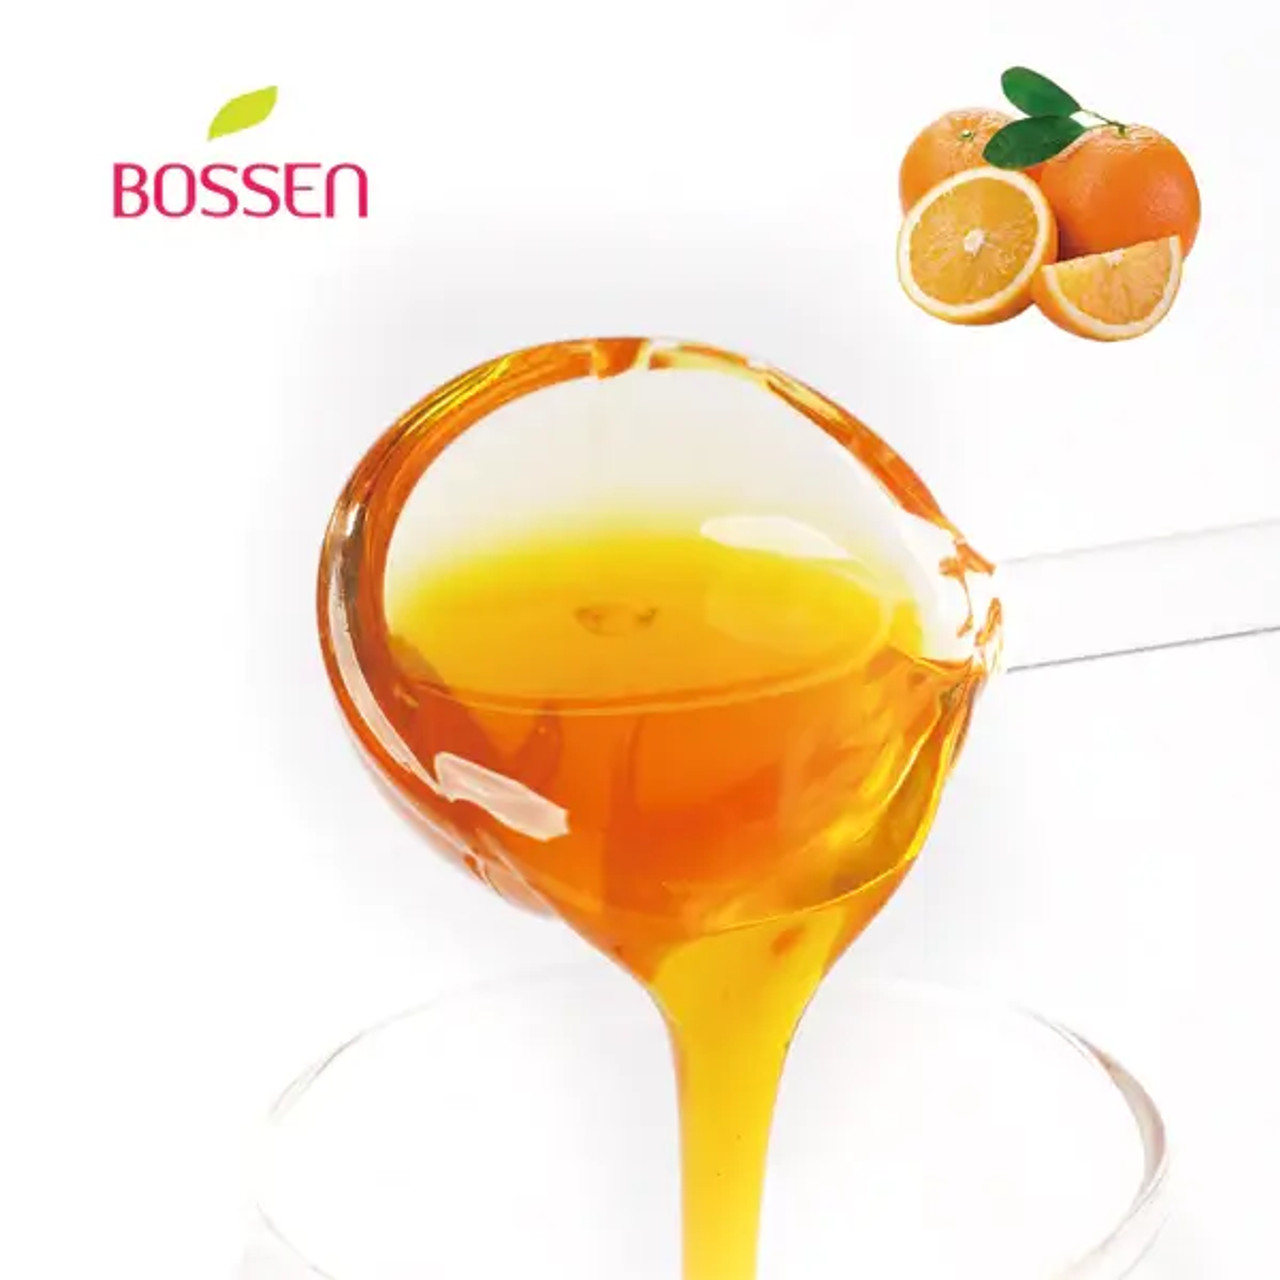 Bossen Orange Bubble Tea Concentrated Syrup 64 fl. oz. (1.89 L) - Real Orange Juice(6/Case)-Chicken Pieces